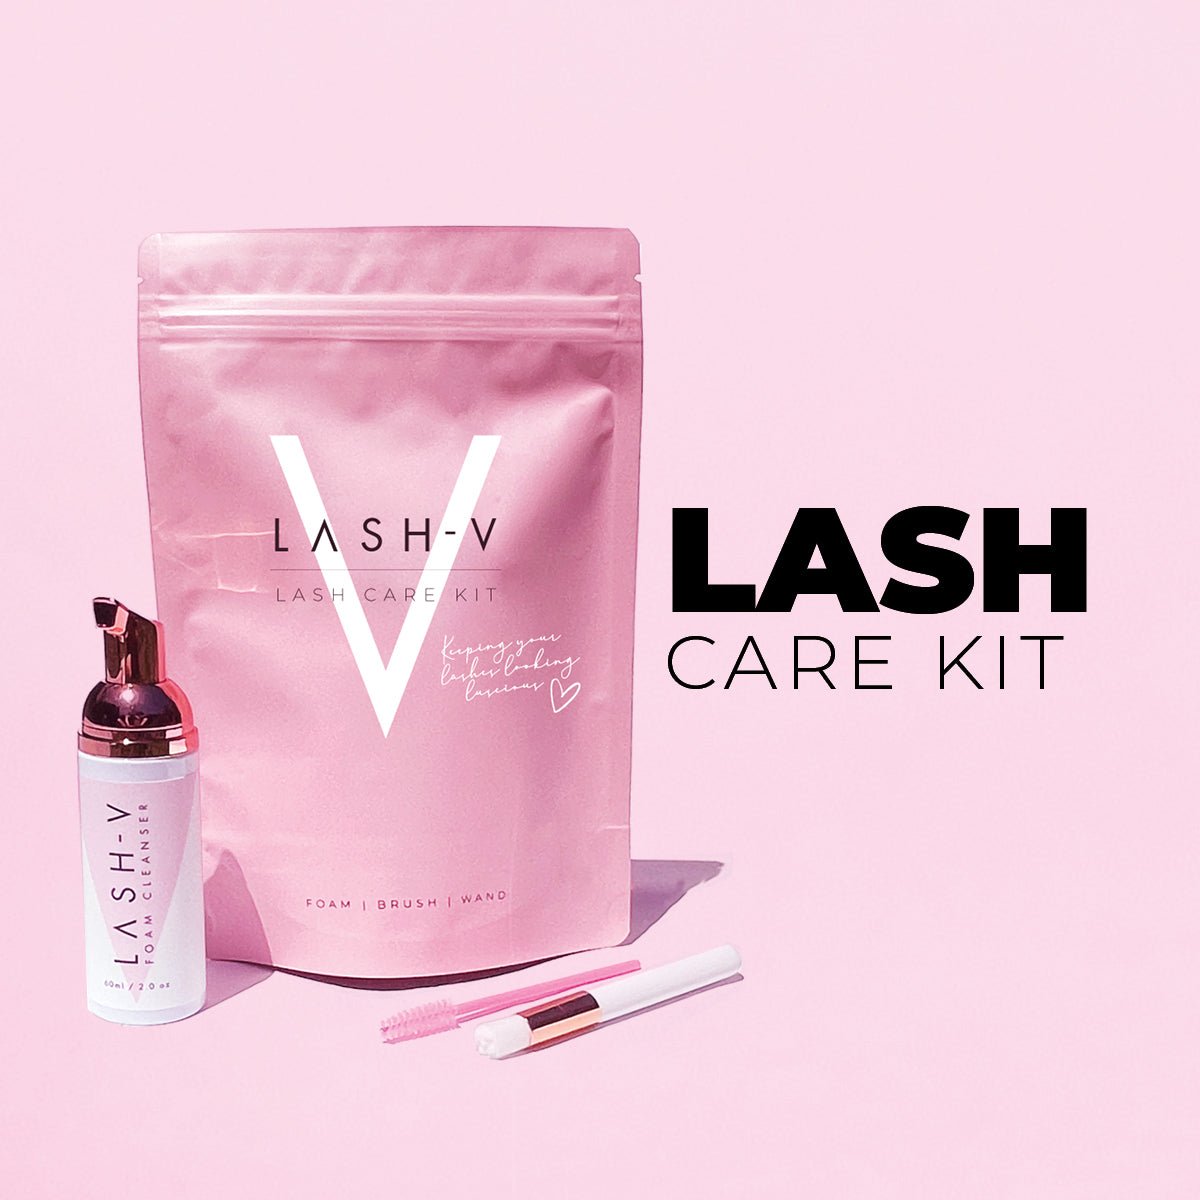 Lash Cleanser Kit - Lash Shampoo Foam + Lash Brush + Mascara Wand - LASH V